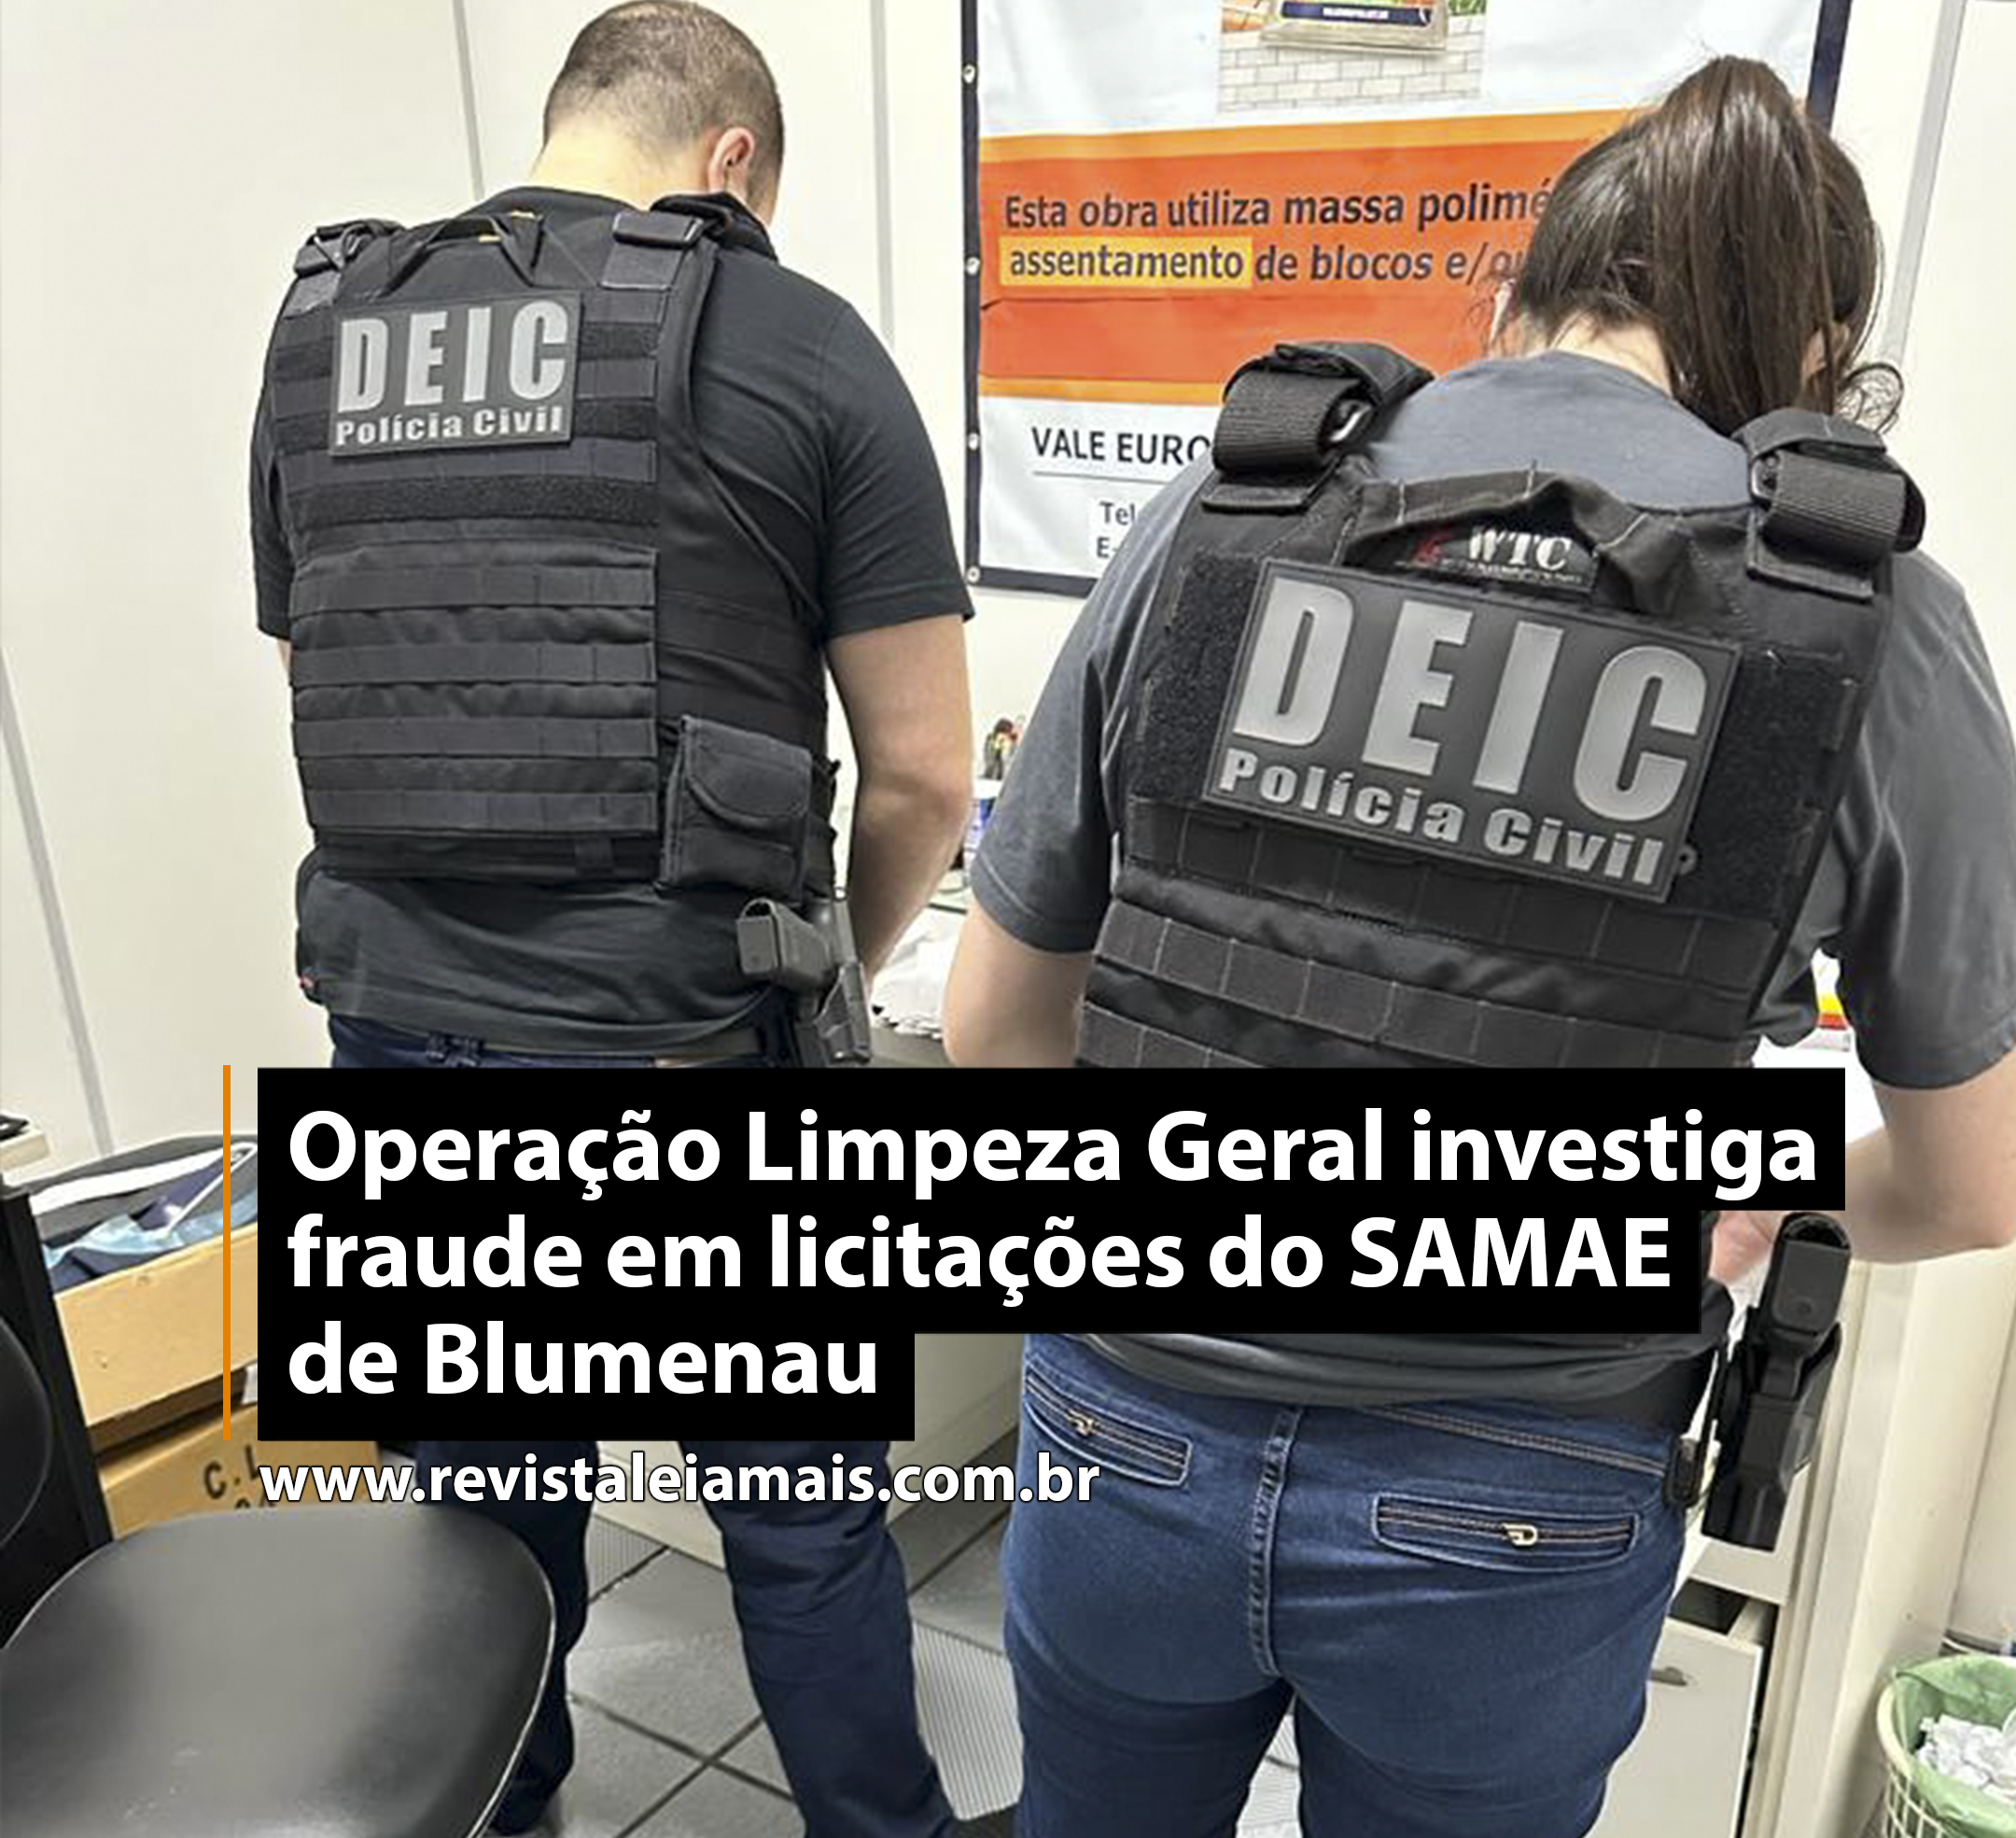 Operação Limpeza Geral investiga fraude em licitações do SAMAE de Blumenau